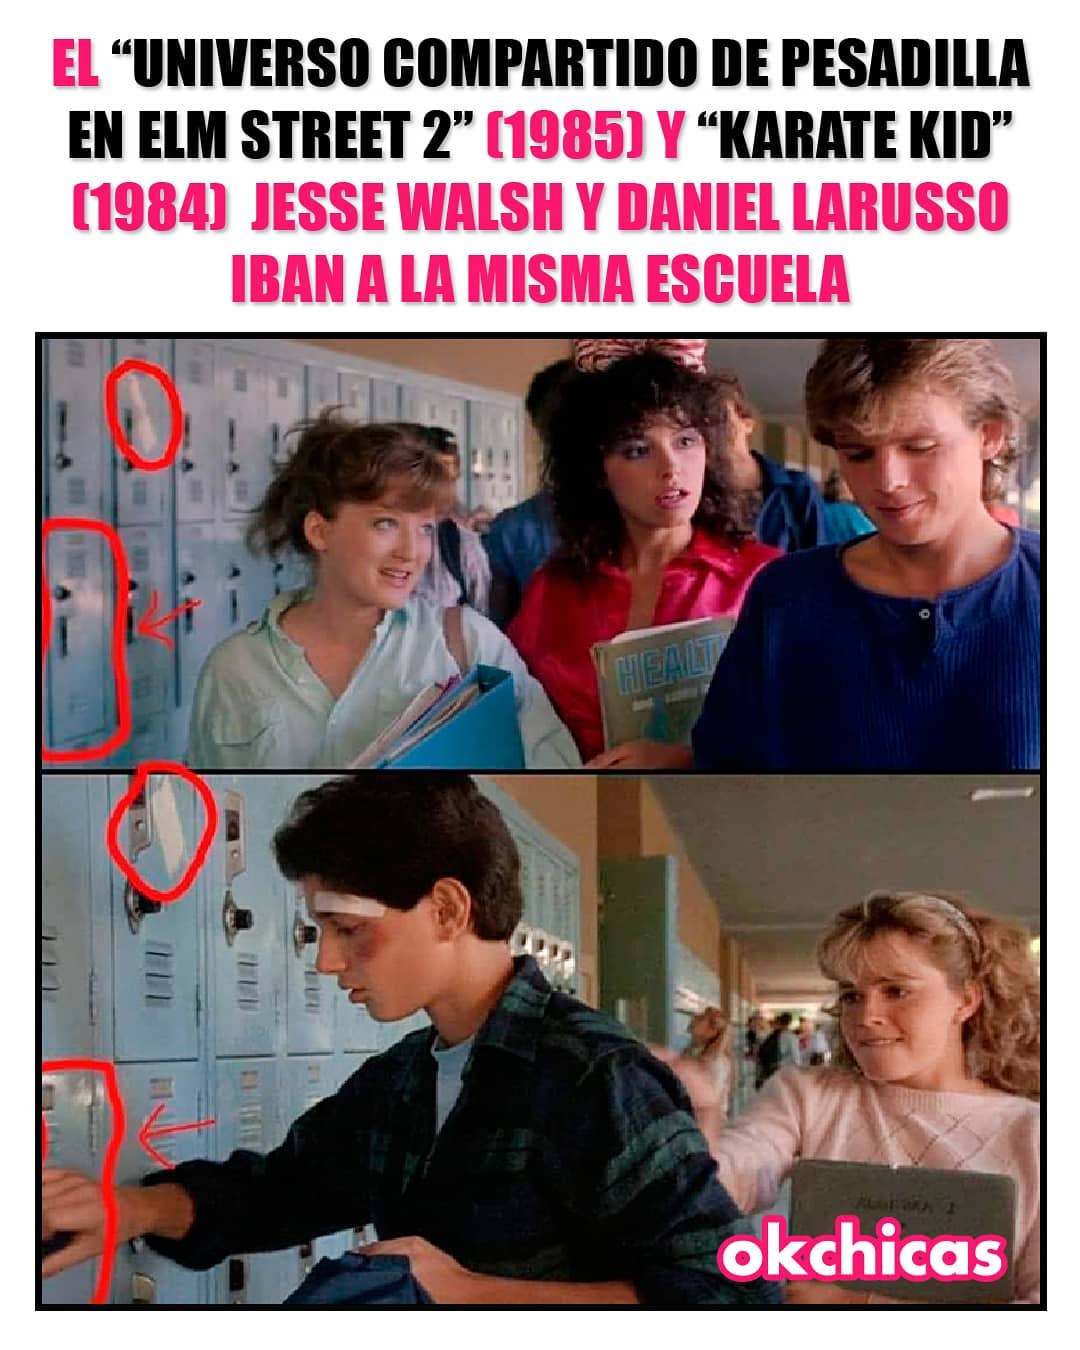 El "Universo Compartido de Pesadilla en Elm Street 2" (1985) y "Karate Kid" (1984) Jesse Walsh y Daniel Larusso iban a la misma escuela.